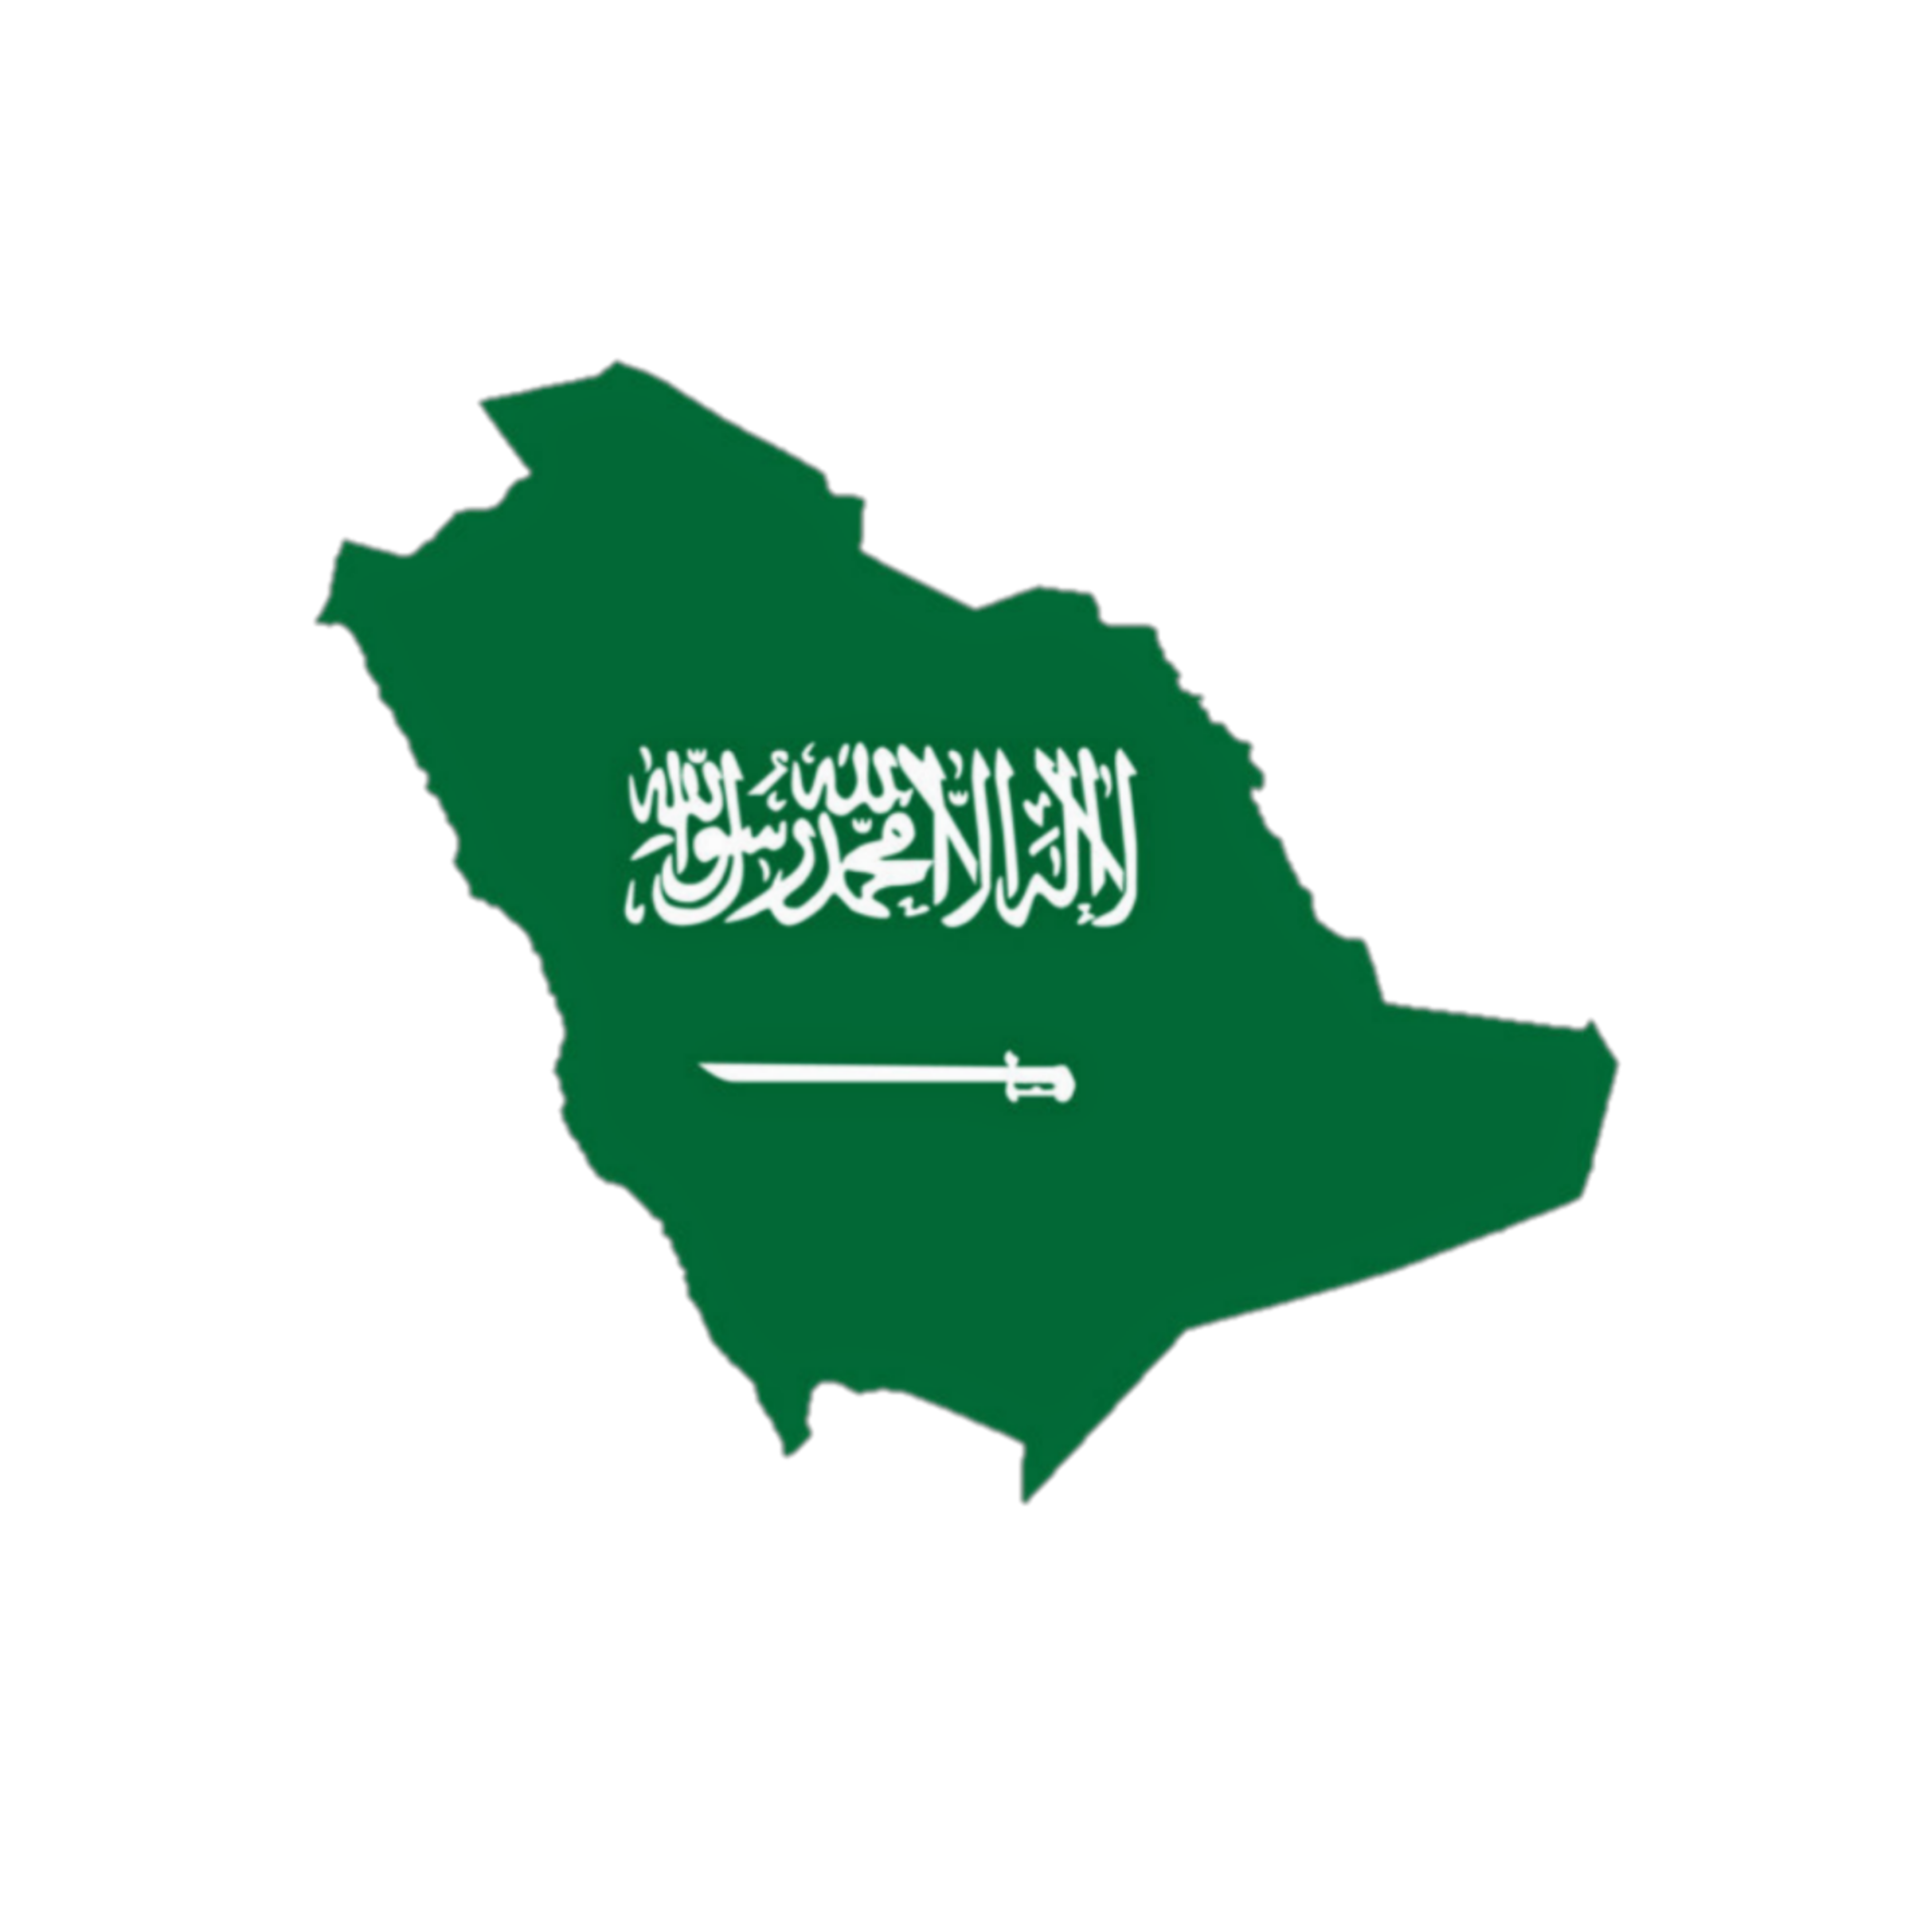 saudi freetoedit #Saudi arbic# sticker by @lil2_2